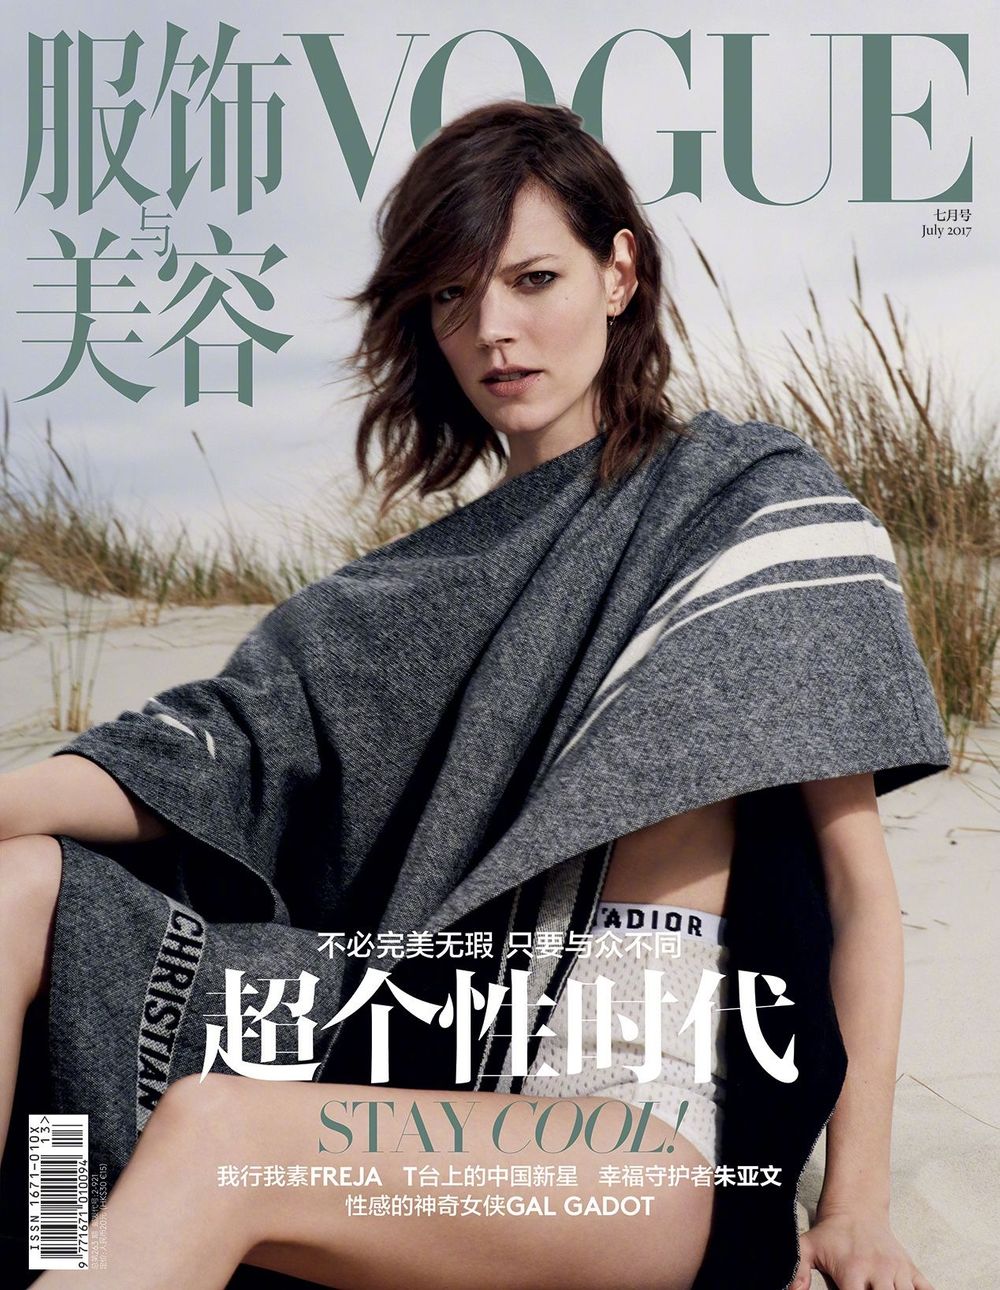 파일:Vogue China July 2017 Freja by Collier Schorr.jpg